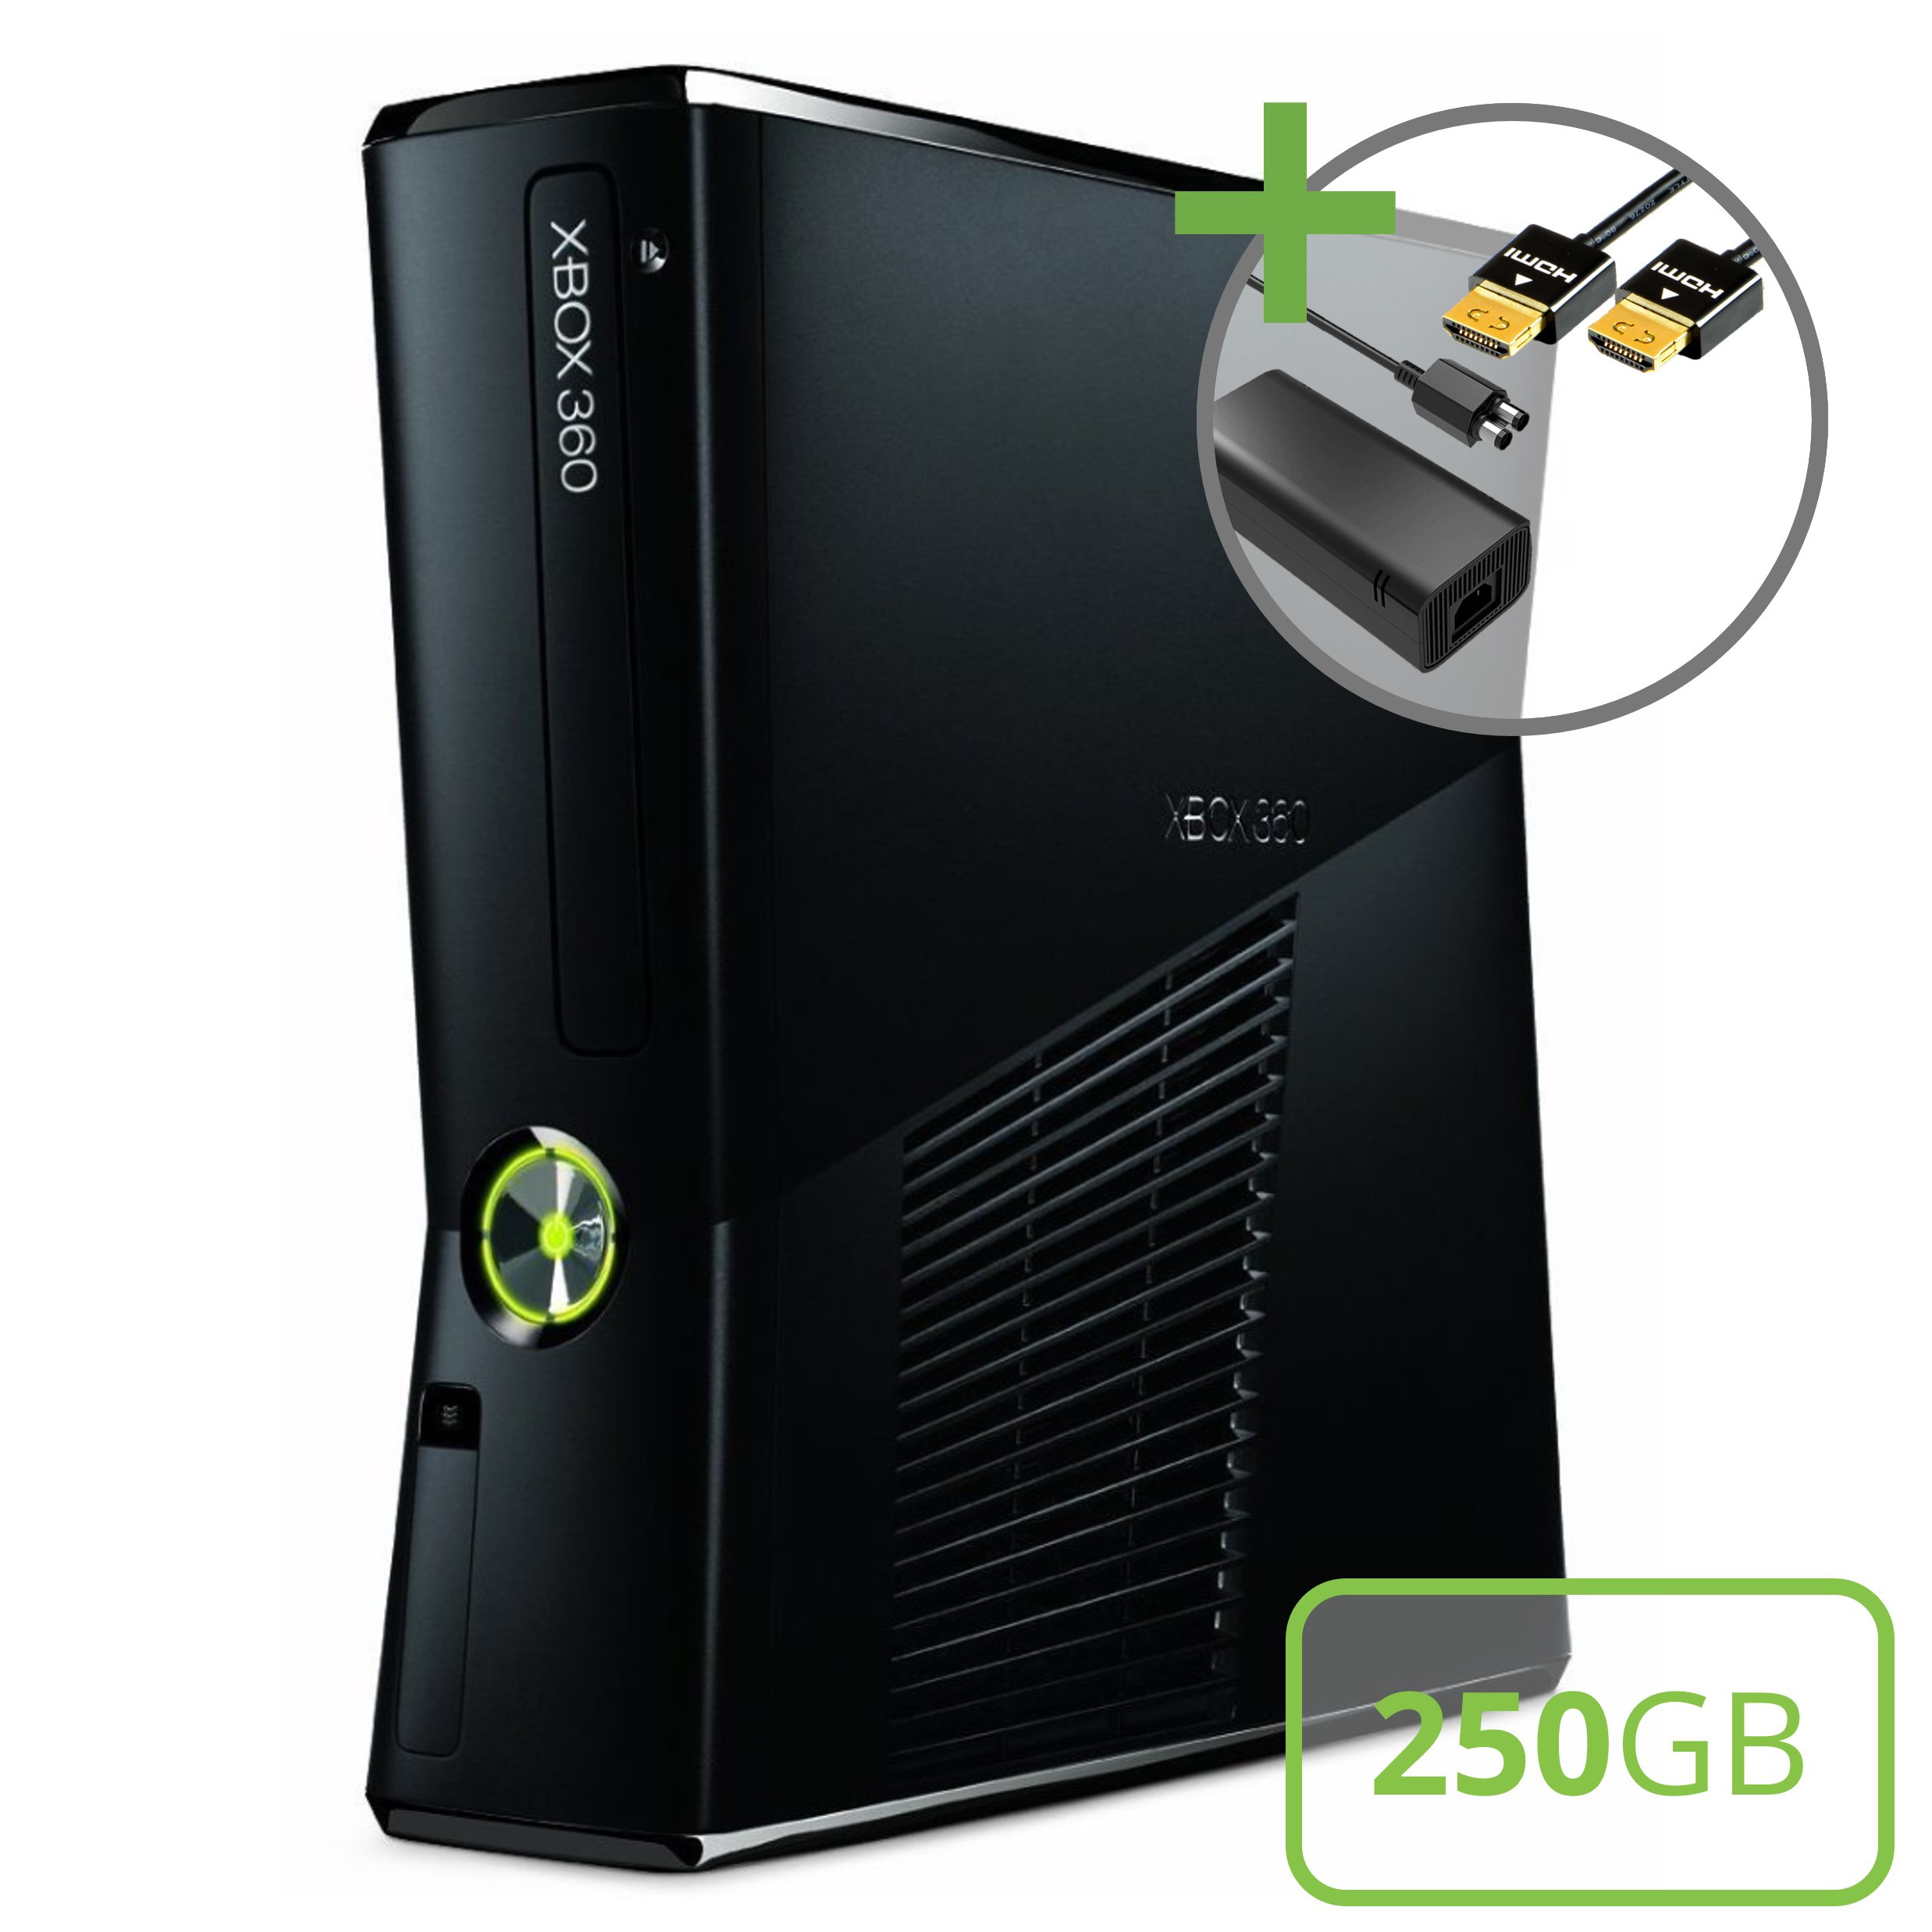 Microsoft Xbox 360 Slim Console (250GB) Kopen | Xbox 360 Hardware